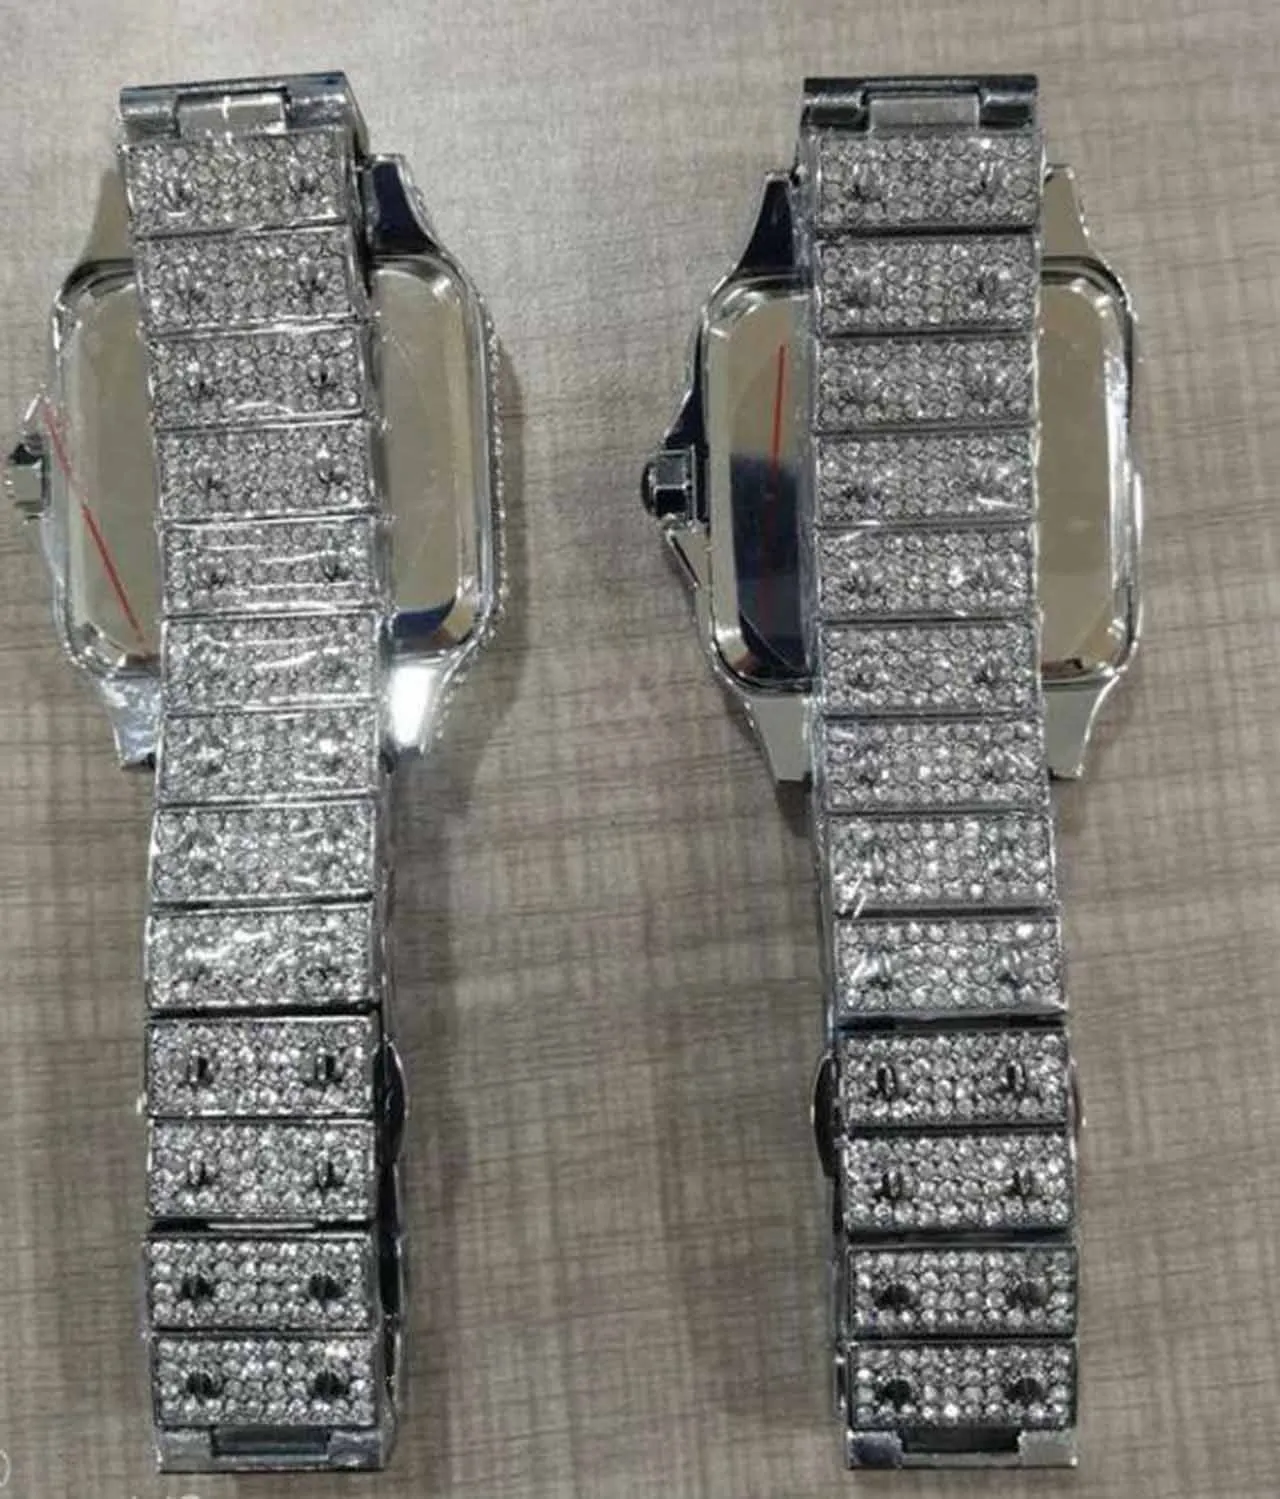 2021 Högkvalitativa herrkvinnor Titta på full diamant Iced Out Strap Designer Watches Quartz Movement Par Lovers Clock Wristwatch 33M2450